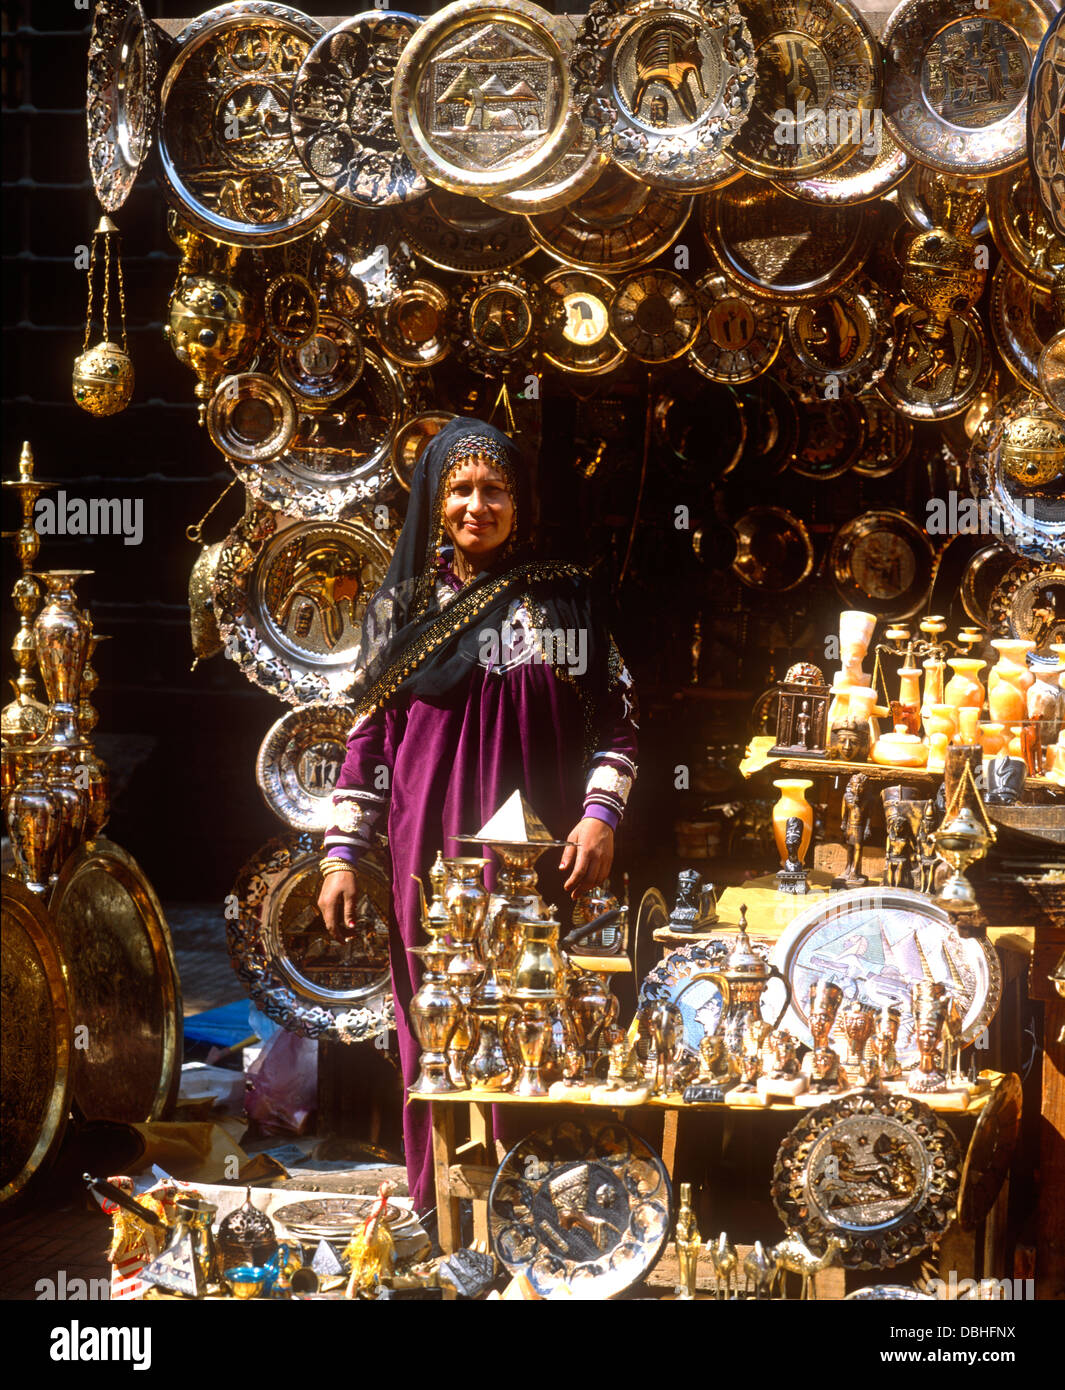 Khan el-Khalili Bazaar, Cairo, Egypt Stock Photo